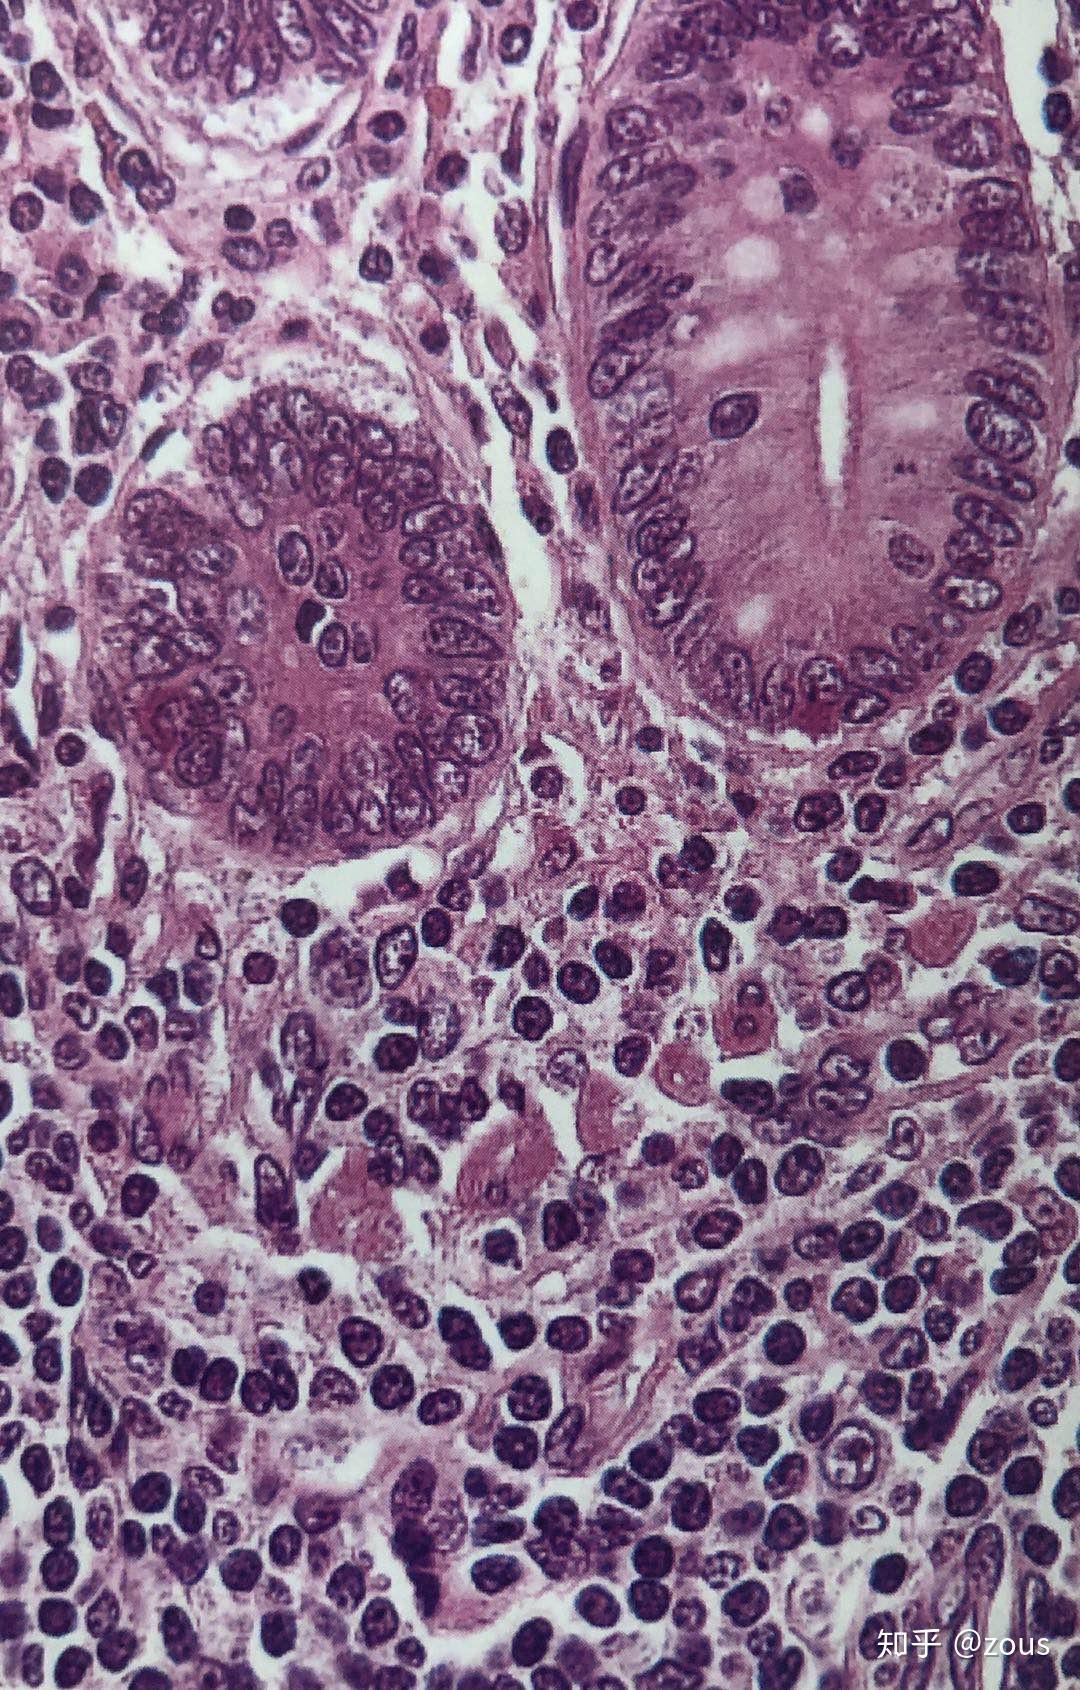 小肠隐窝细胞图片图片